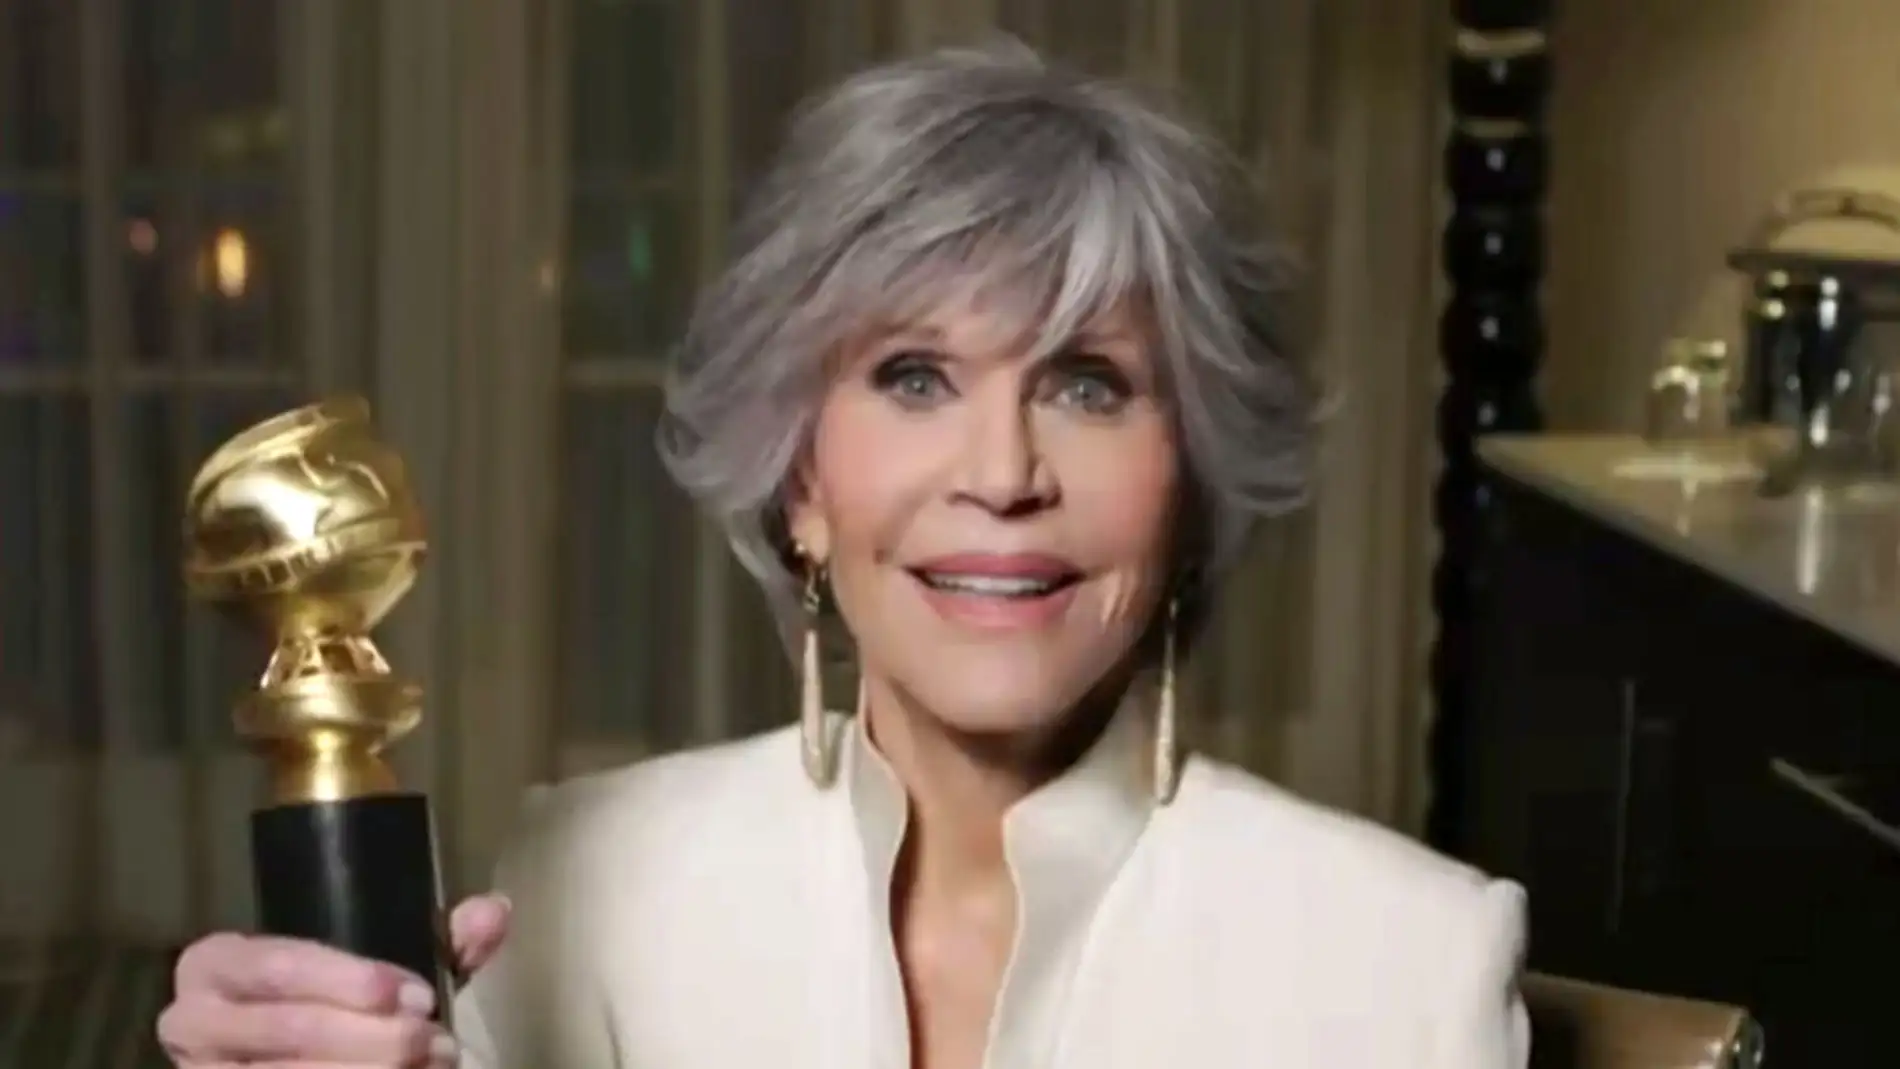 Jane Fonda en los Globos de Oro 2021